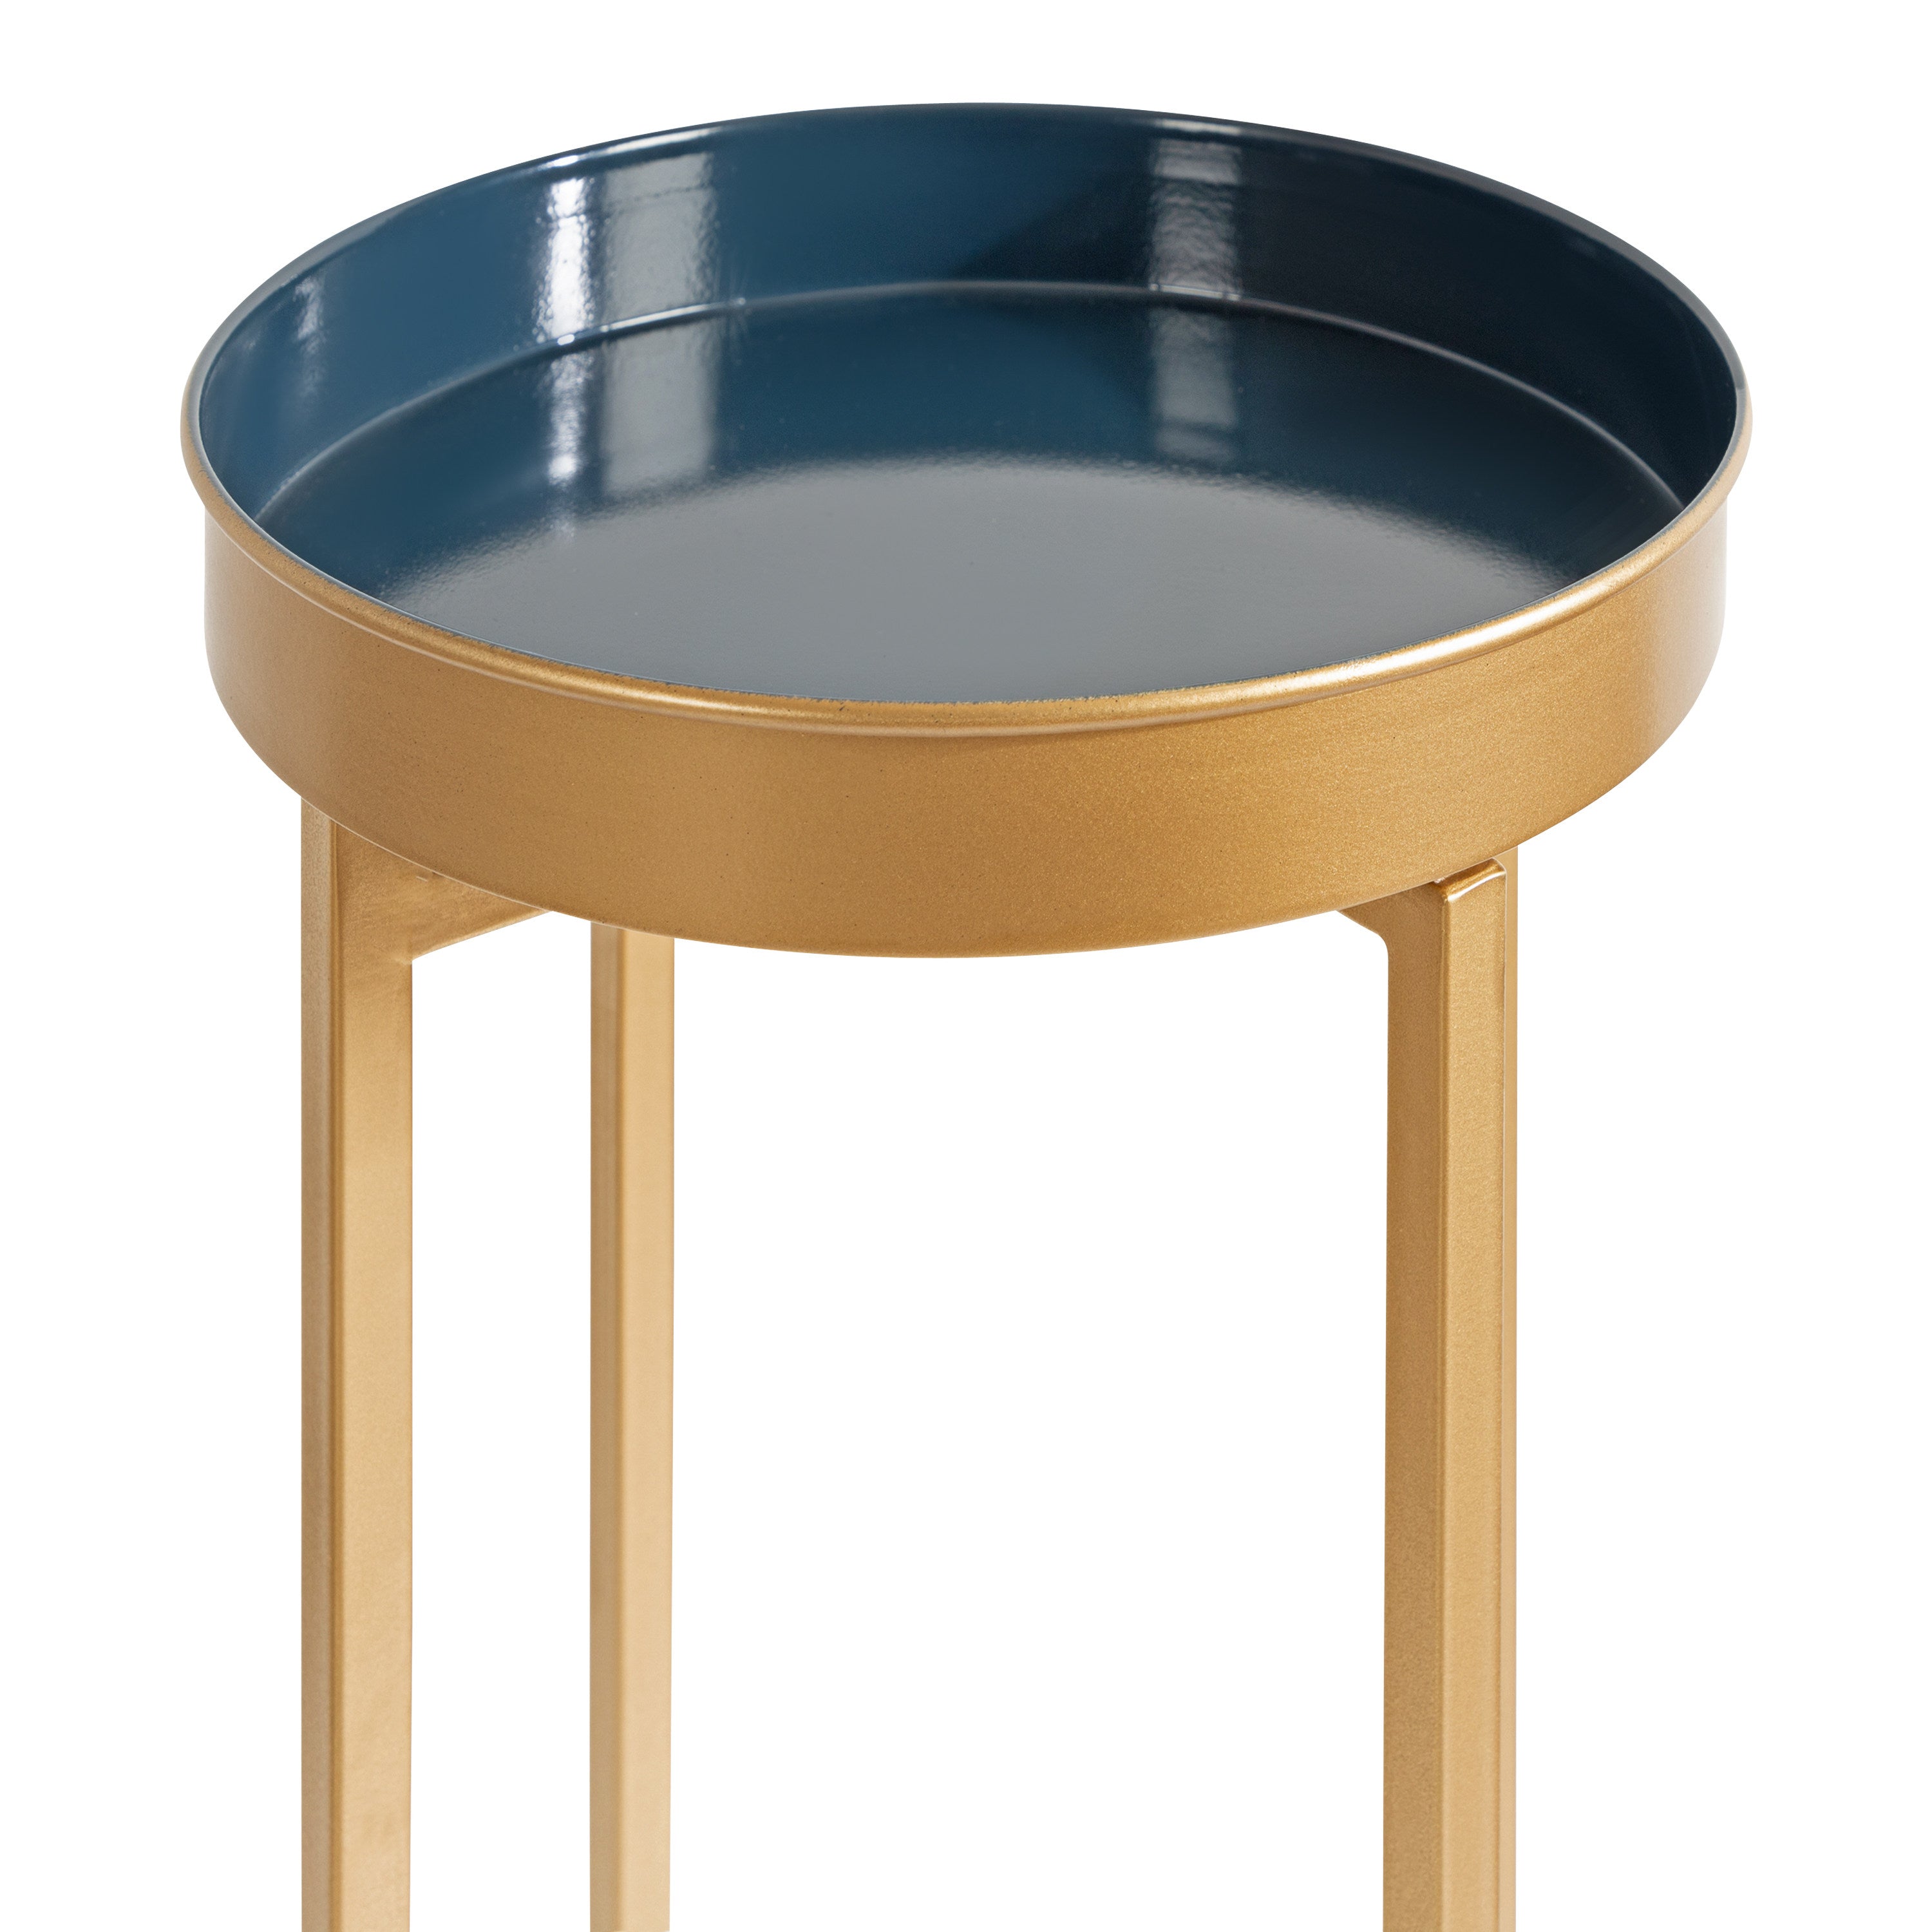 Celia Round Metal Foldable Tray Table Set